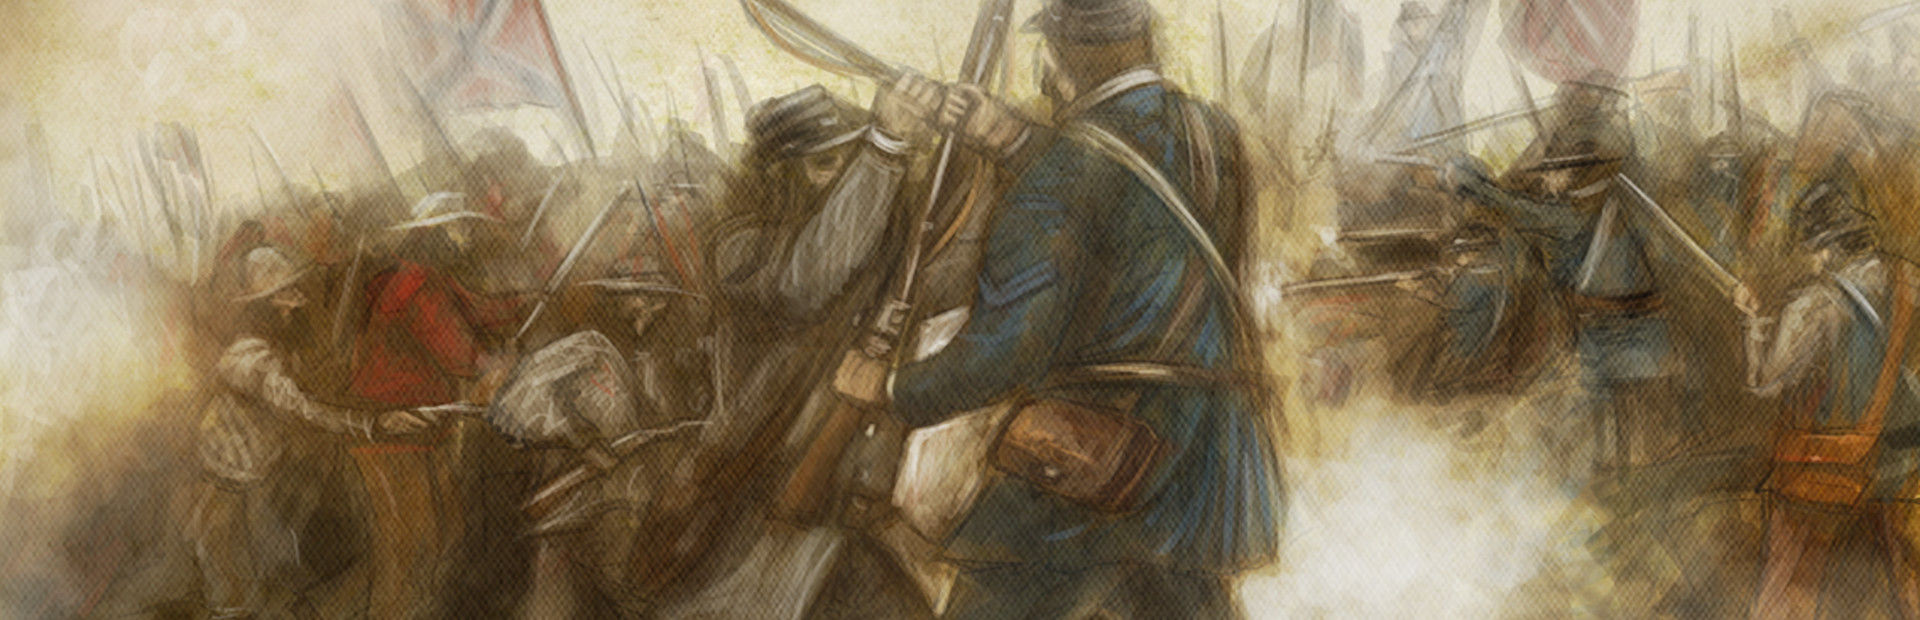 Civil War: Gettysburg cover image